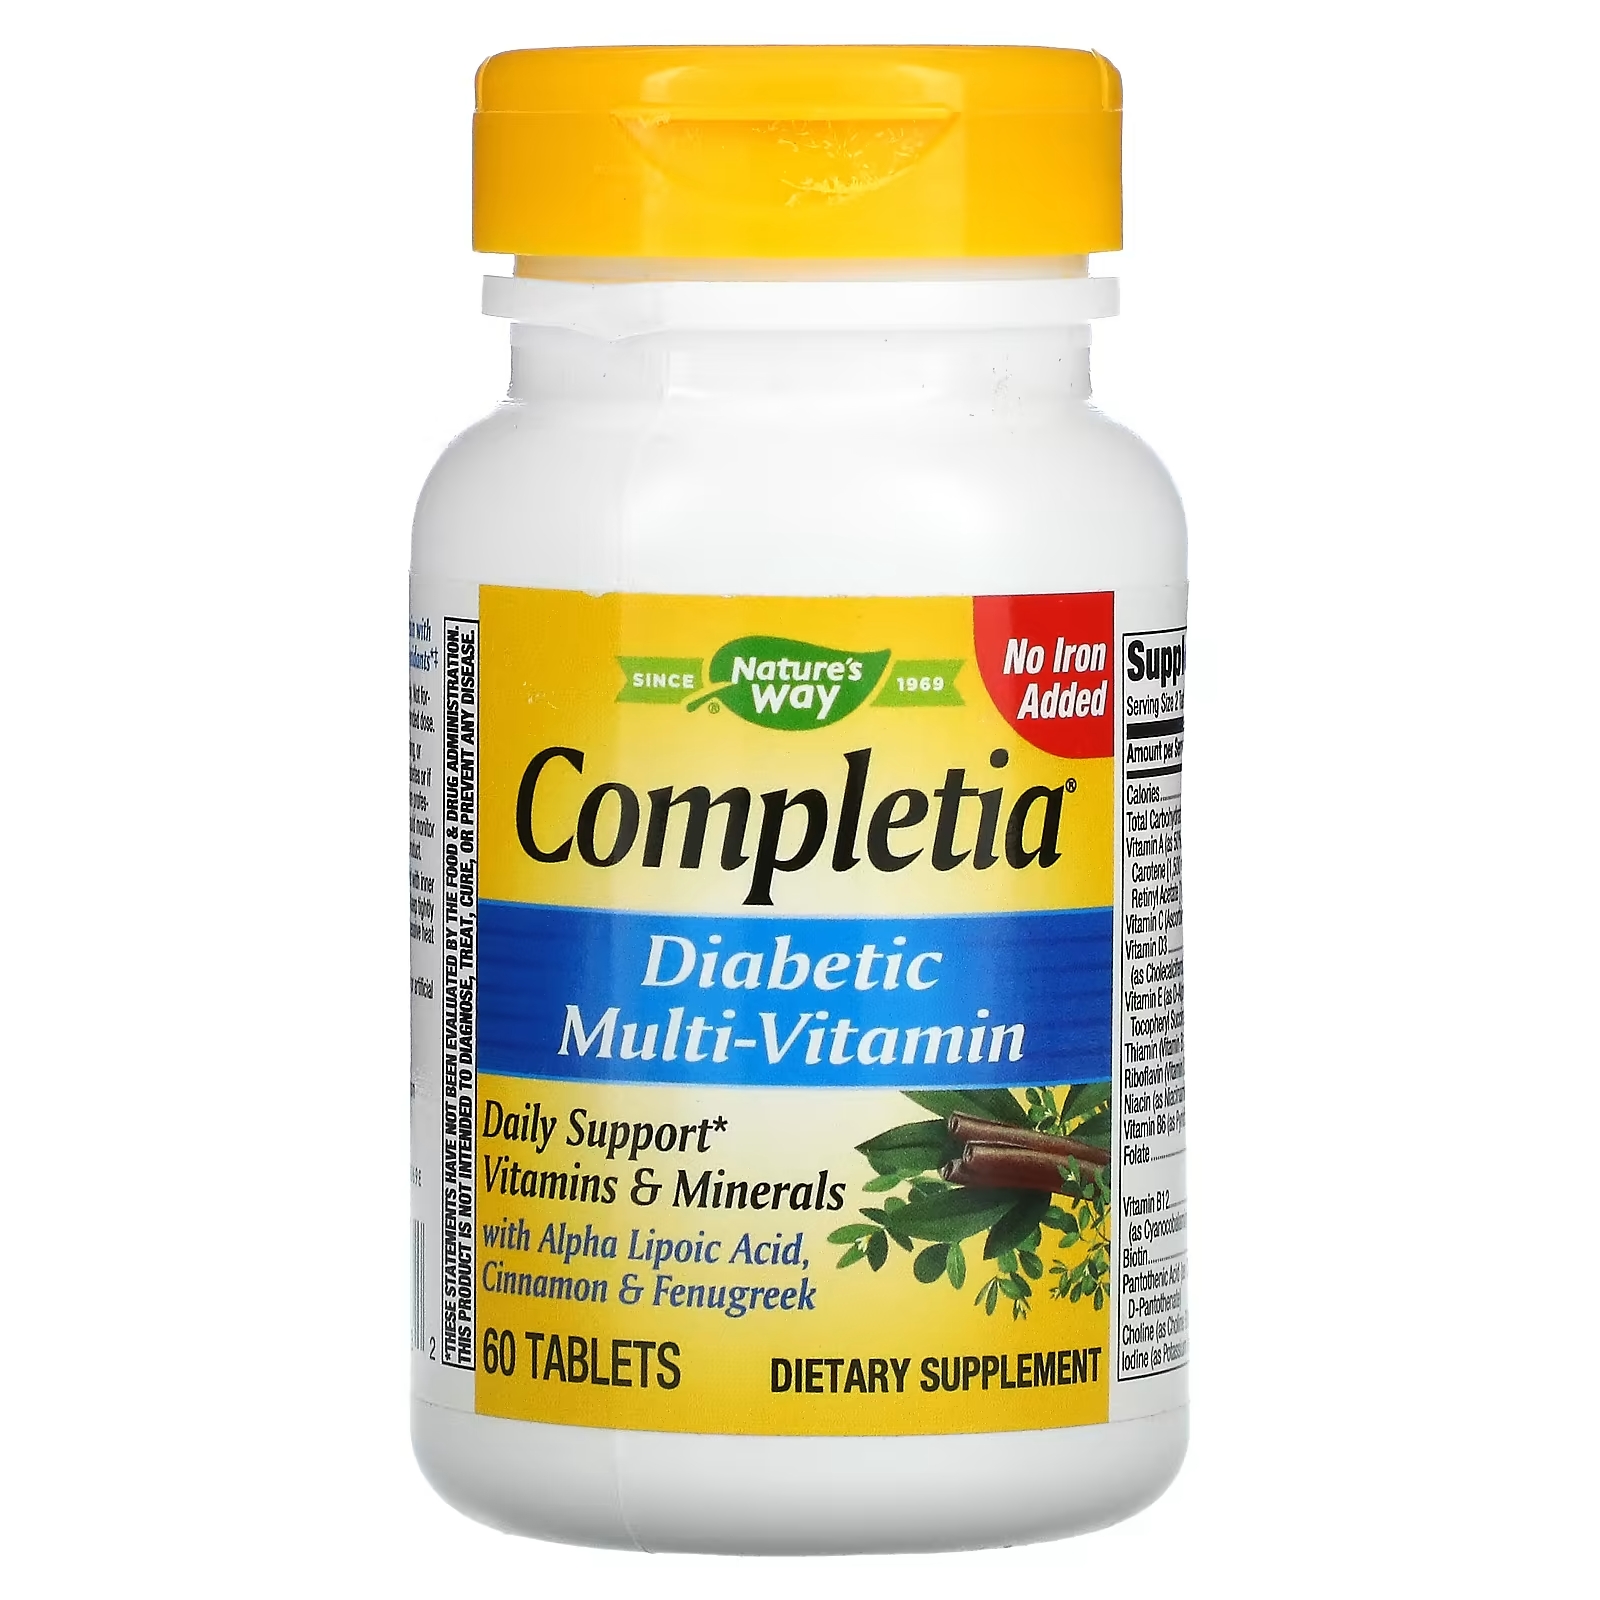 Nature's Way Completia мультивитаминный комплекс для диабетиков без спирта железа, 60 таблеток